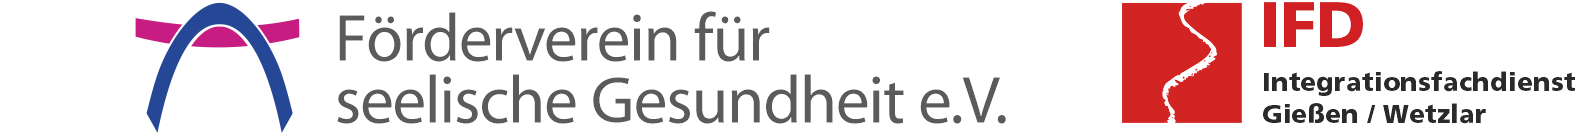 Logo Grafik Foerderverein seelische Gesundheit Giessen Integrationsfachdienst betreutes Wohnen1